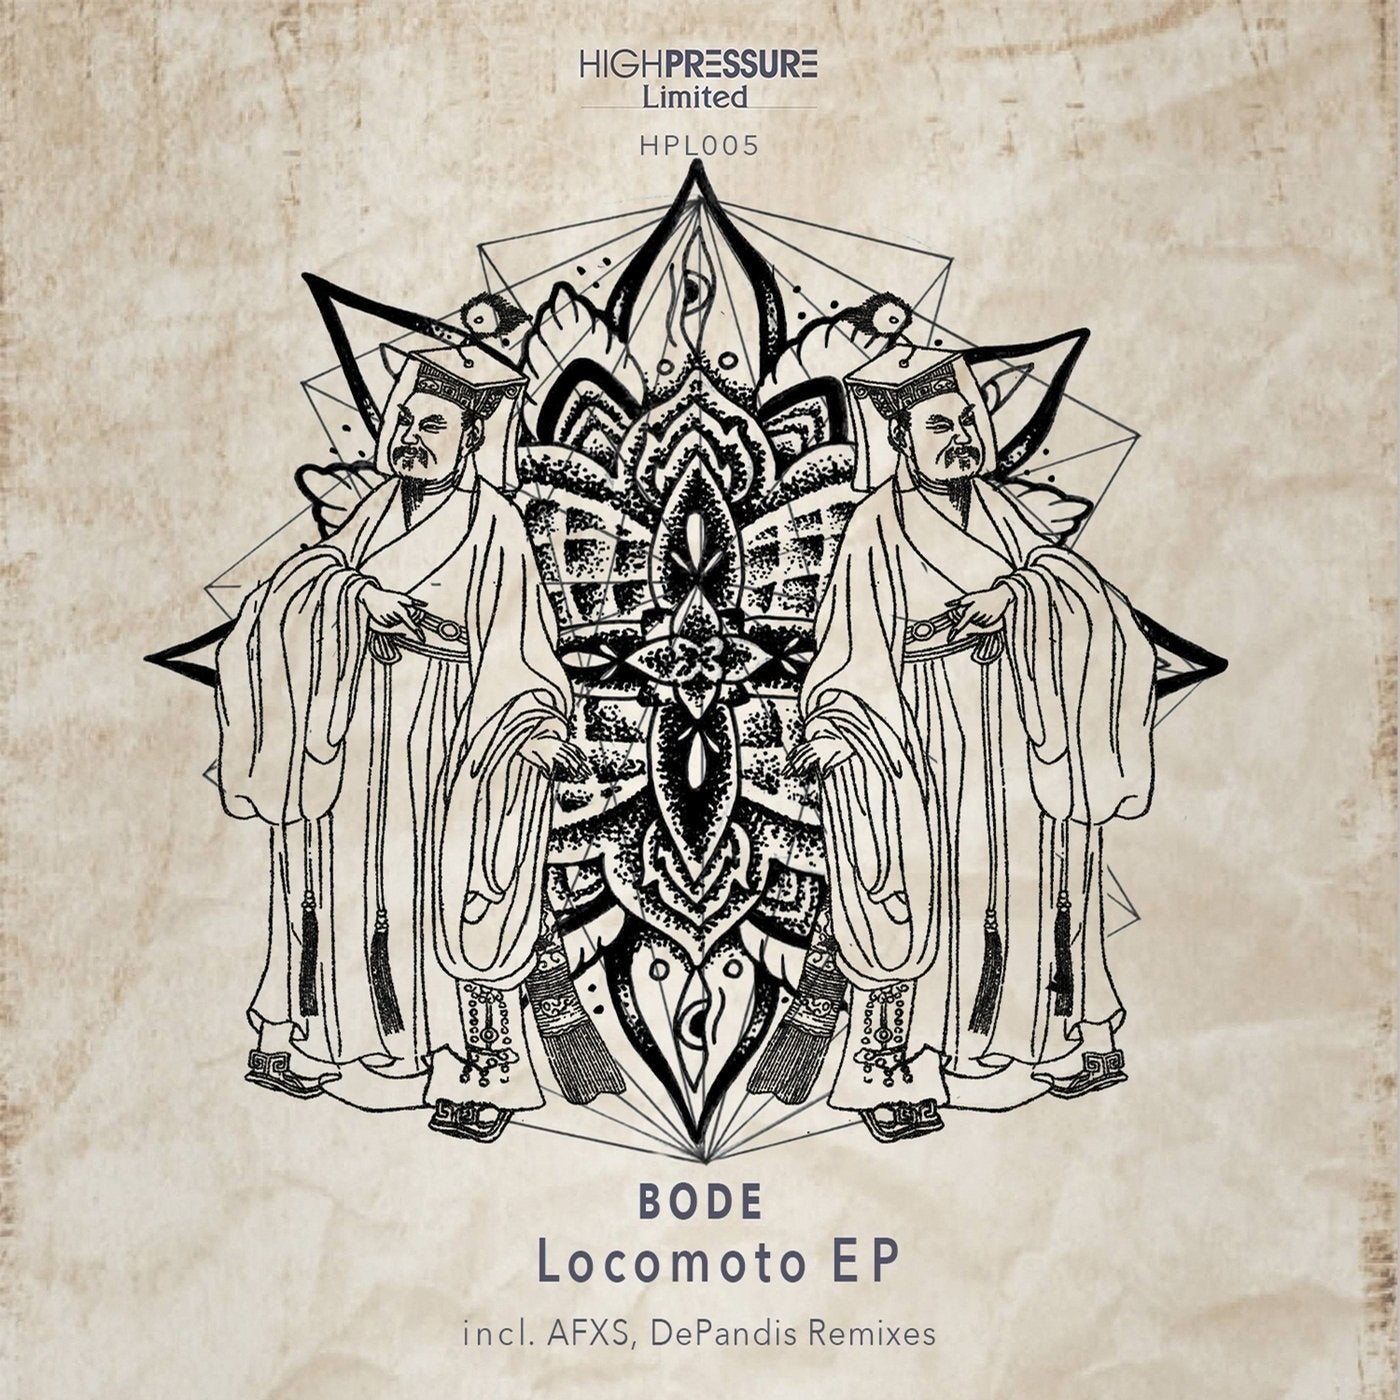 Locomoto EP